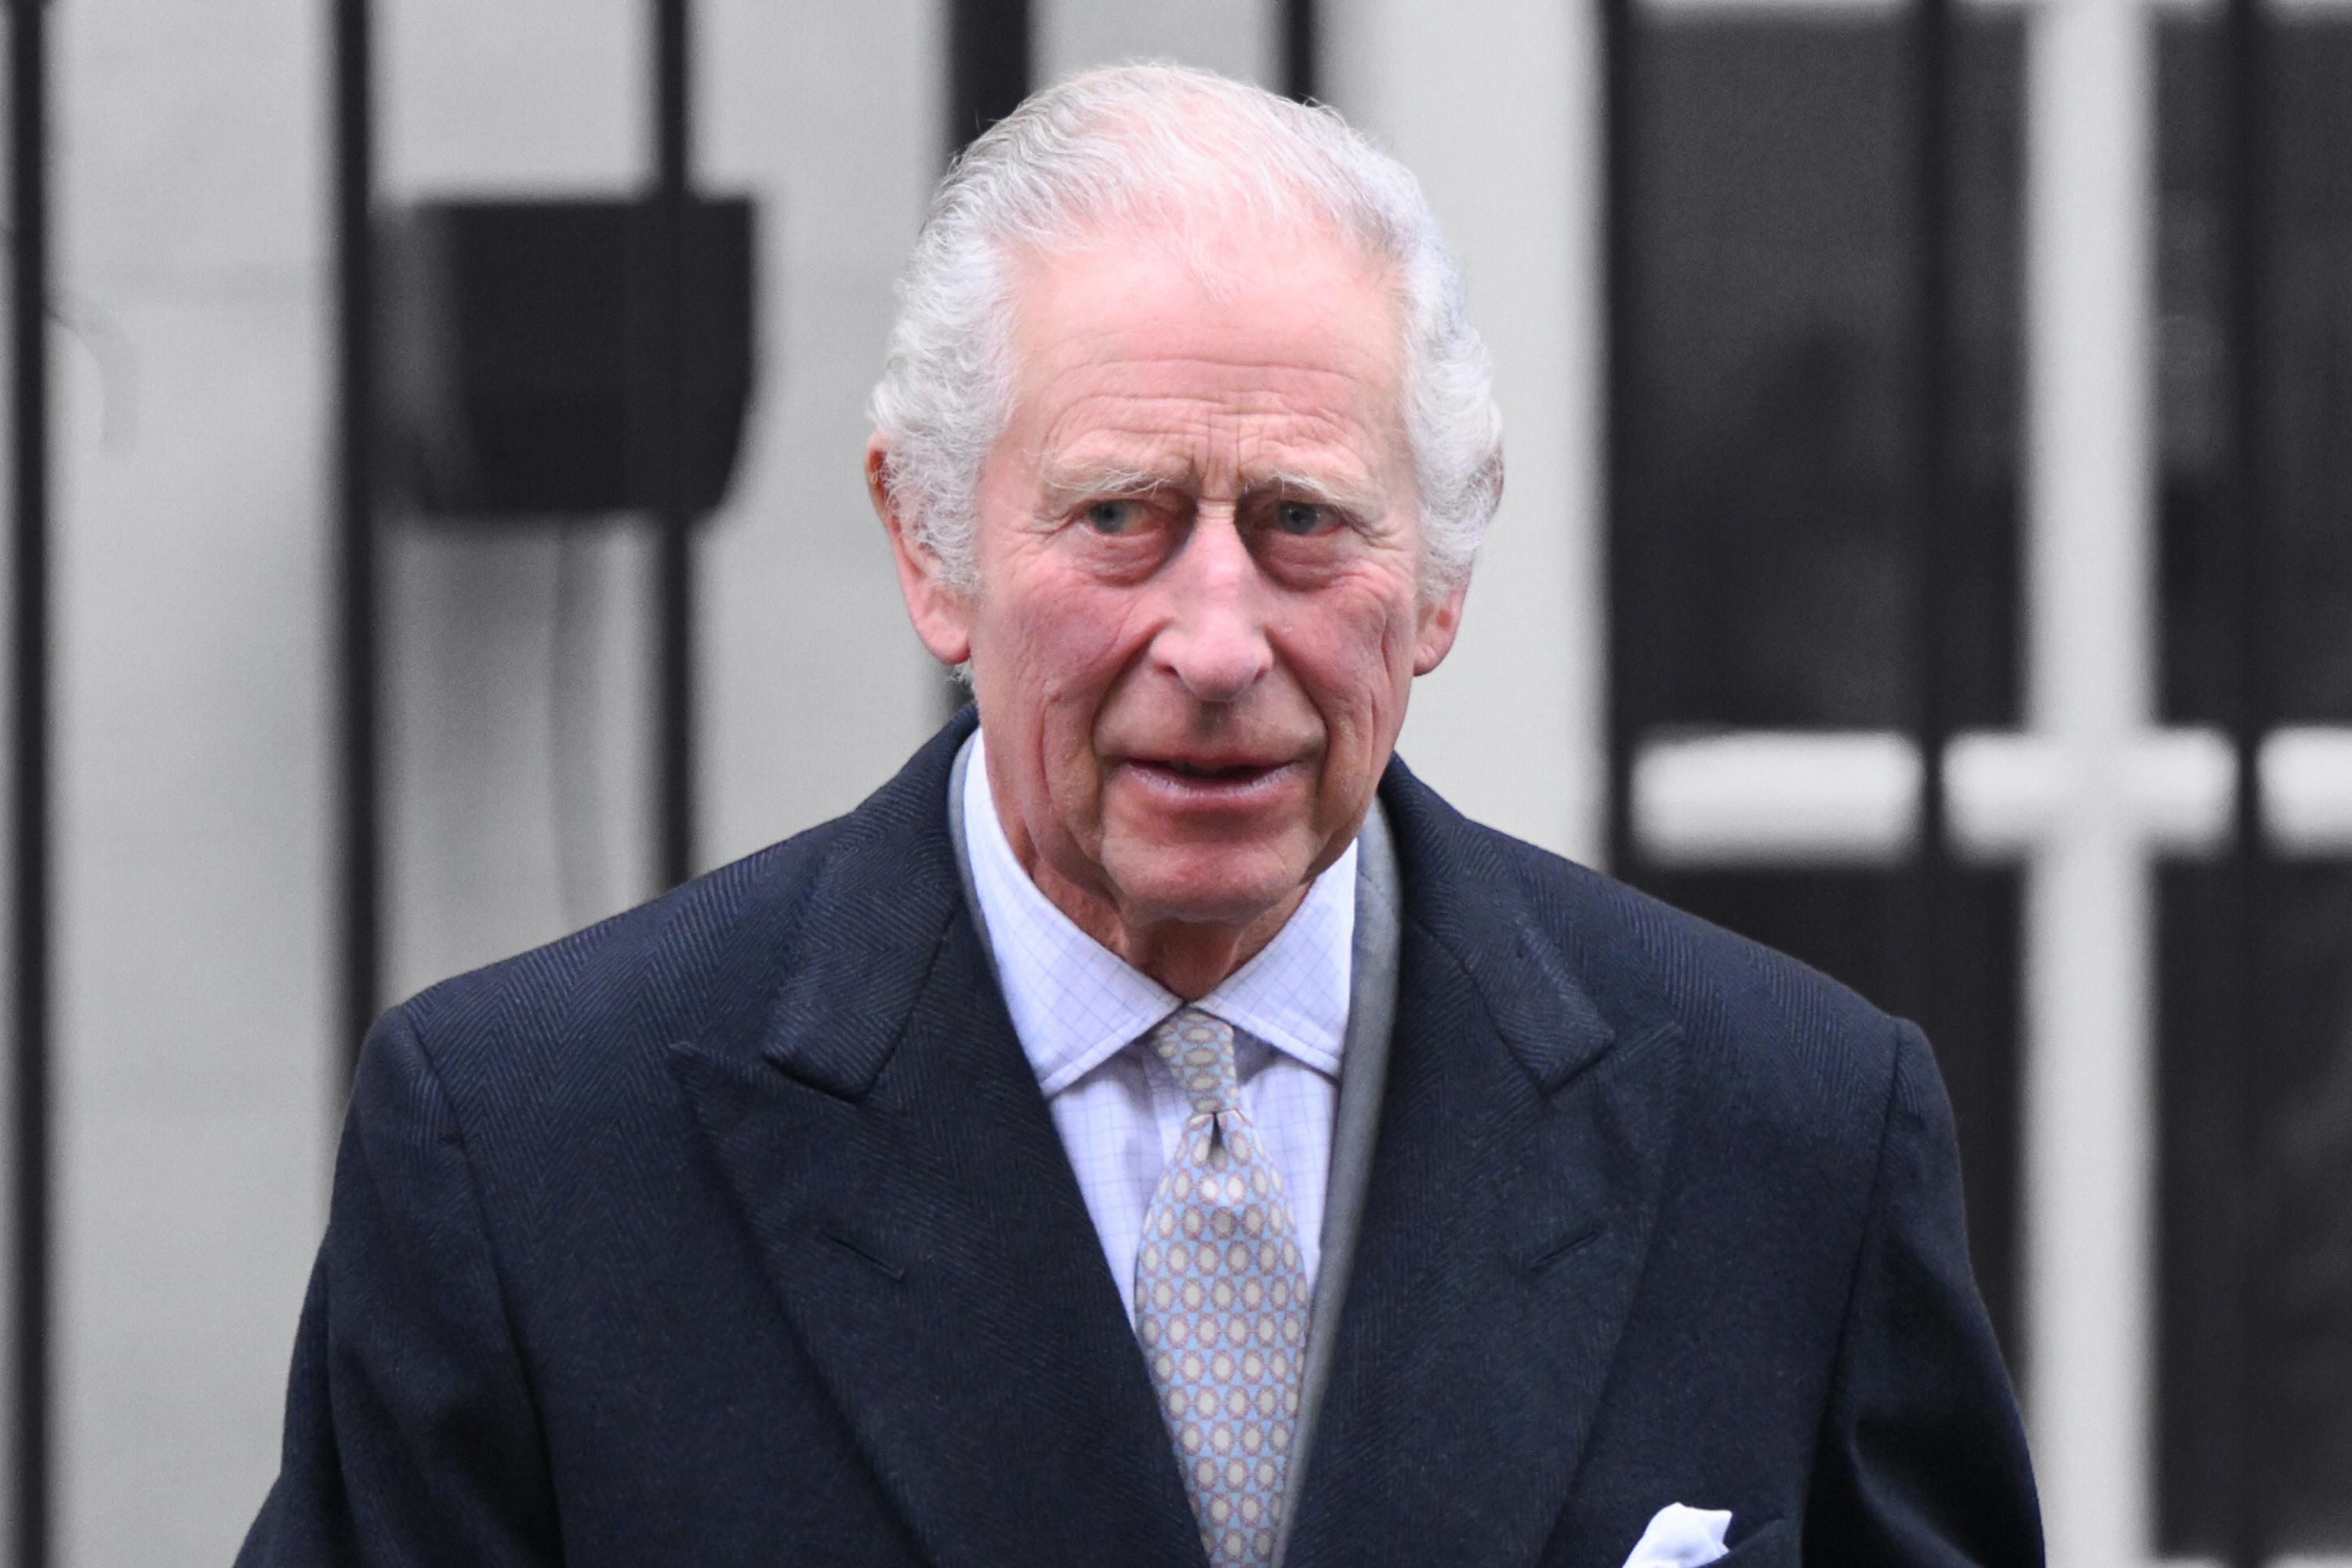 Der Palast hat ein wichtiges Gesundheitsupdate für König Charles bekannt gegeben